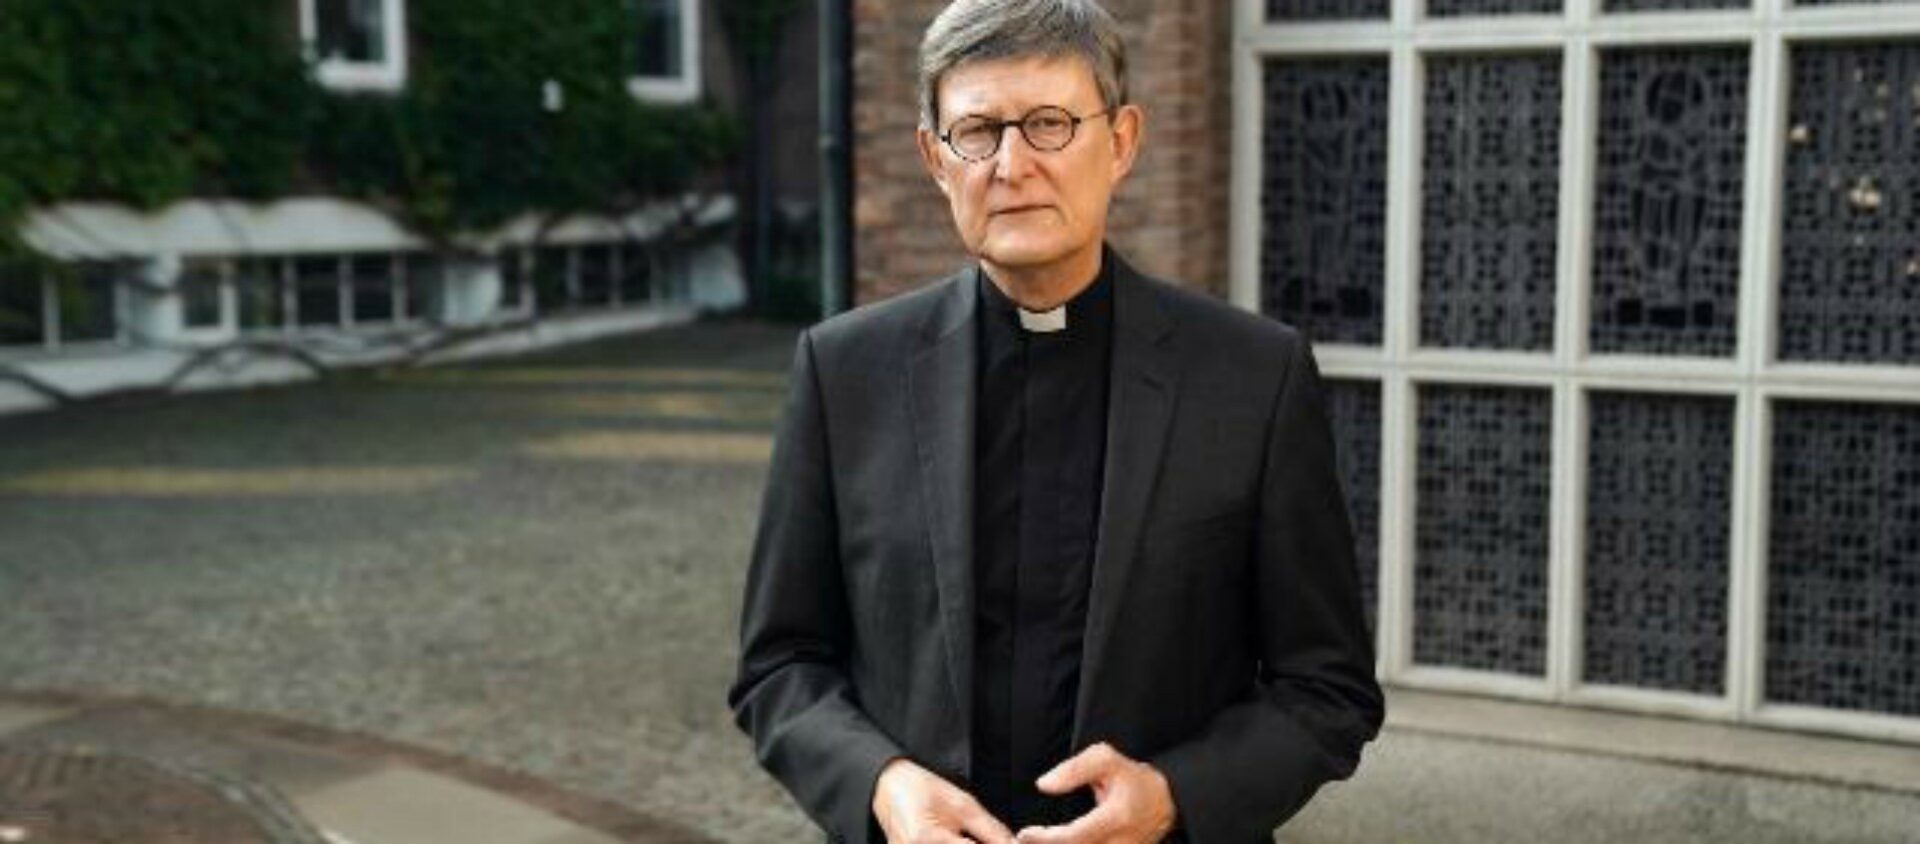 L'archevêque de Cologne, le cardinal Rainer Woelki, n'a pas l'intention de démissionner | © Erzbistum Köln